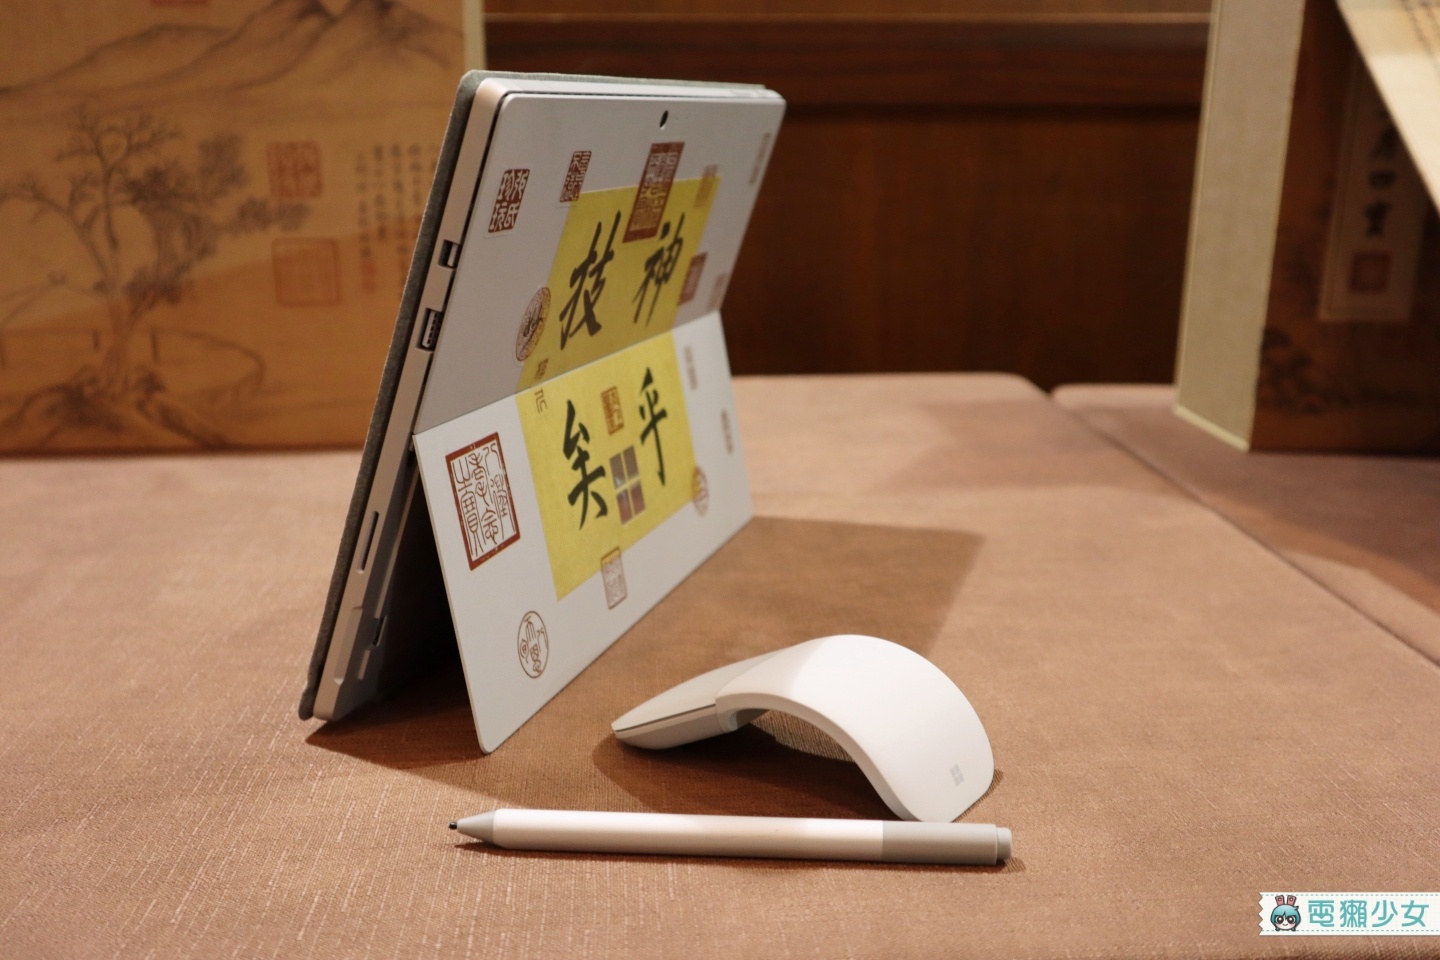 出門｜微軟跟故宮的聯名款你看過嗎？『 新文房四寶 』用快雪時晴帖做產品包裝 裡頭Surface Pro 6、滑鼠、手寫筆通通有！